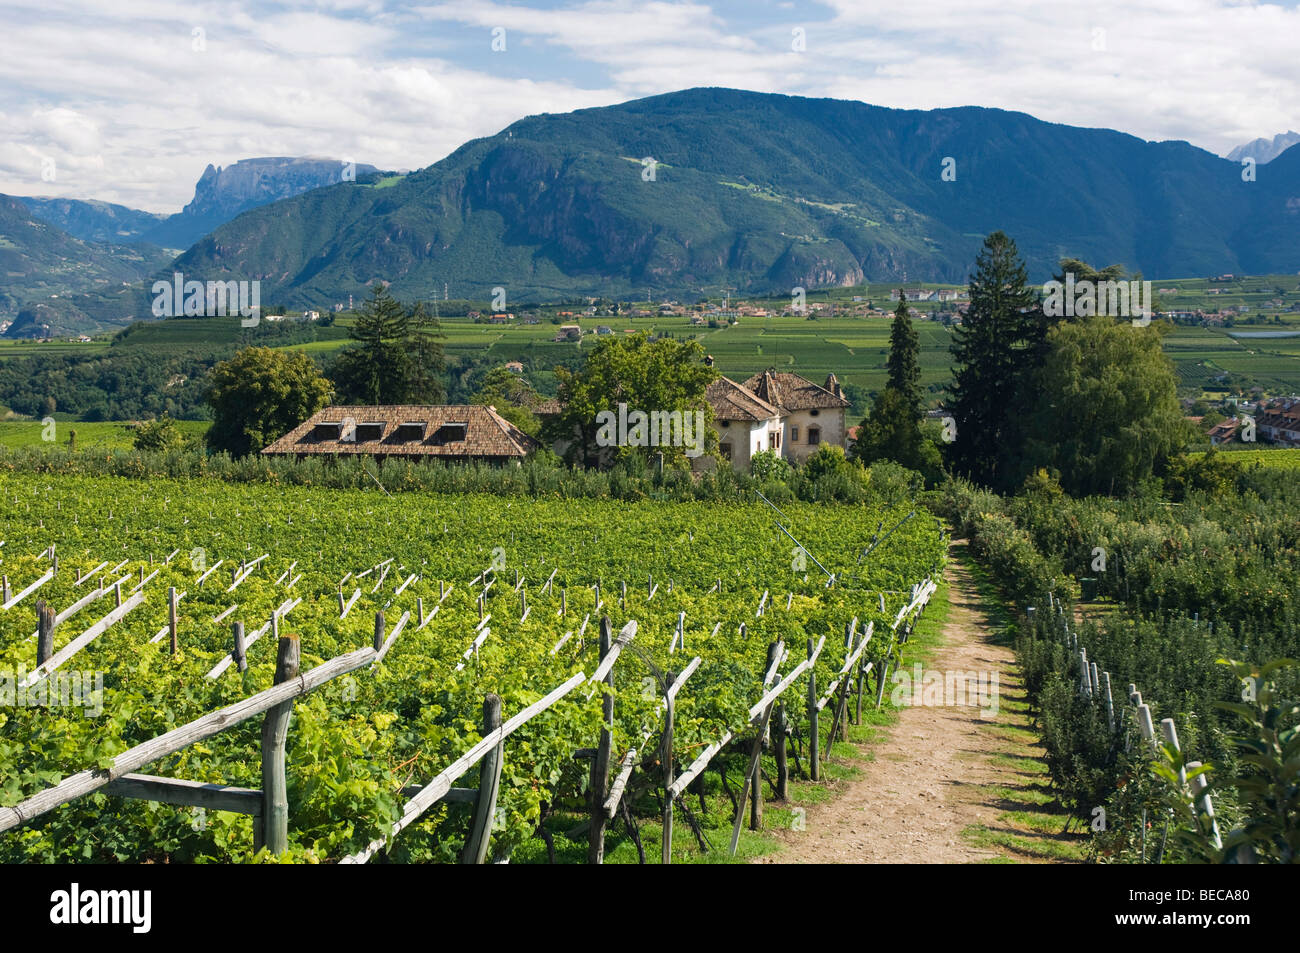 Vineyard, Eppan or Appiano, Trentino, Alto Adige, Italy, Europe Stock Photo